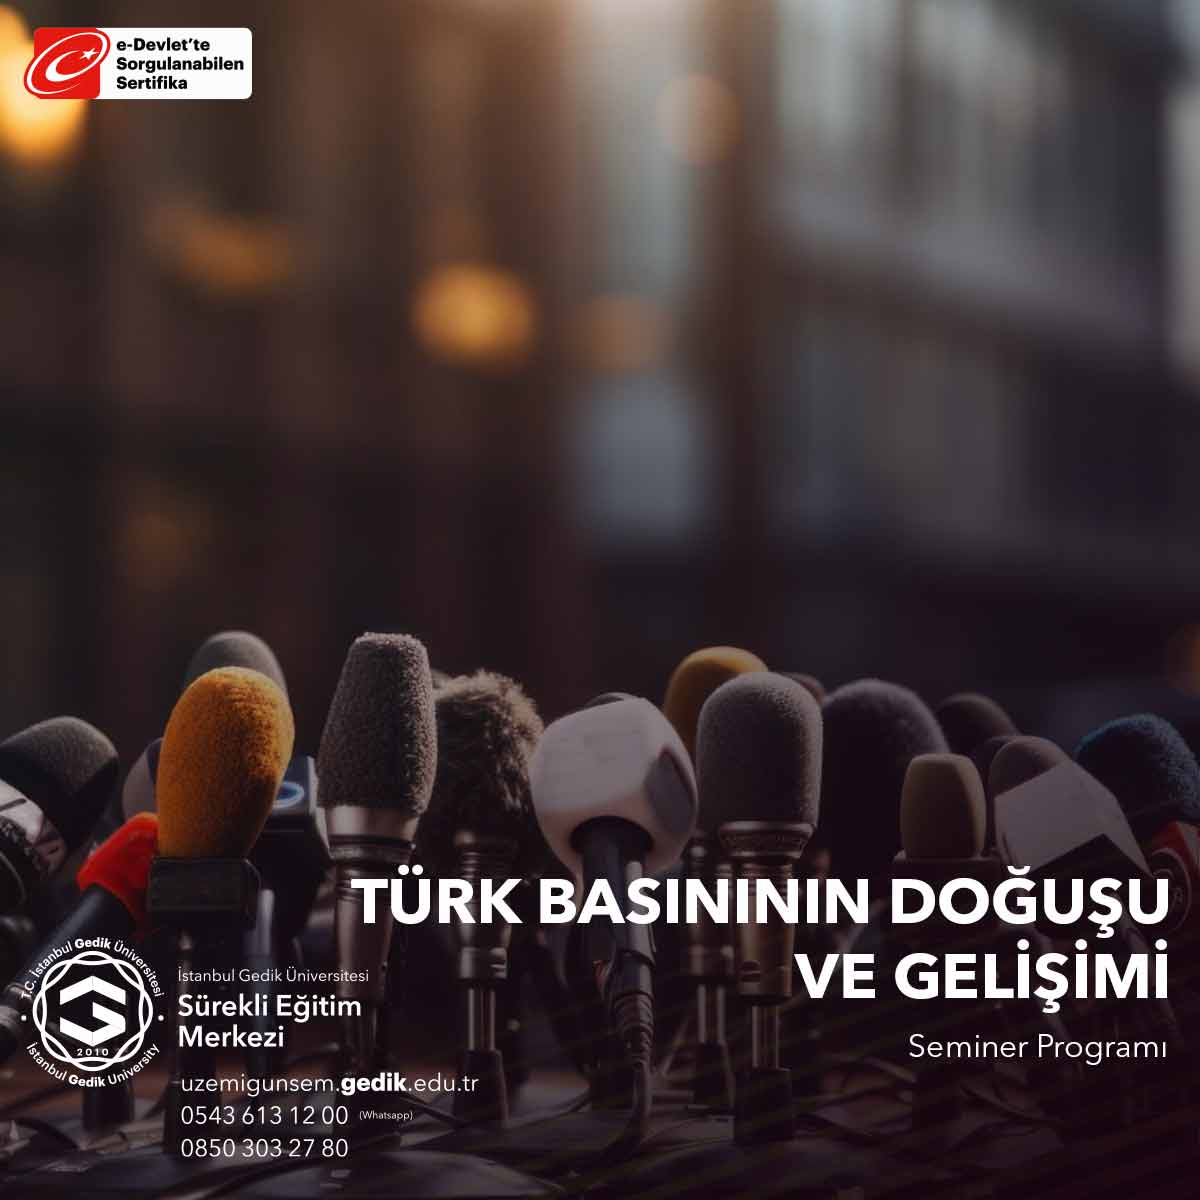 Türk Basınının Doğuşu Ve Gelişimi Semineri